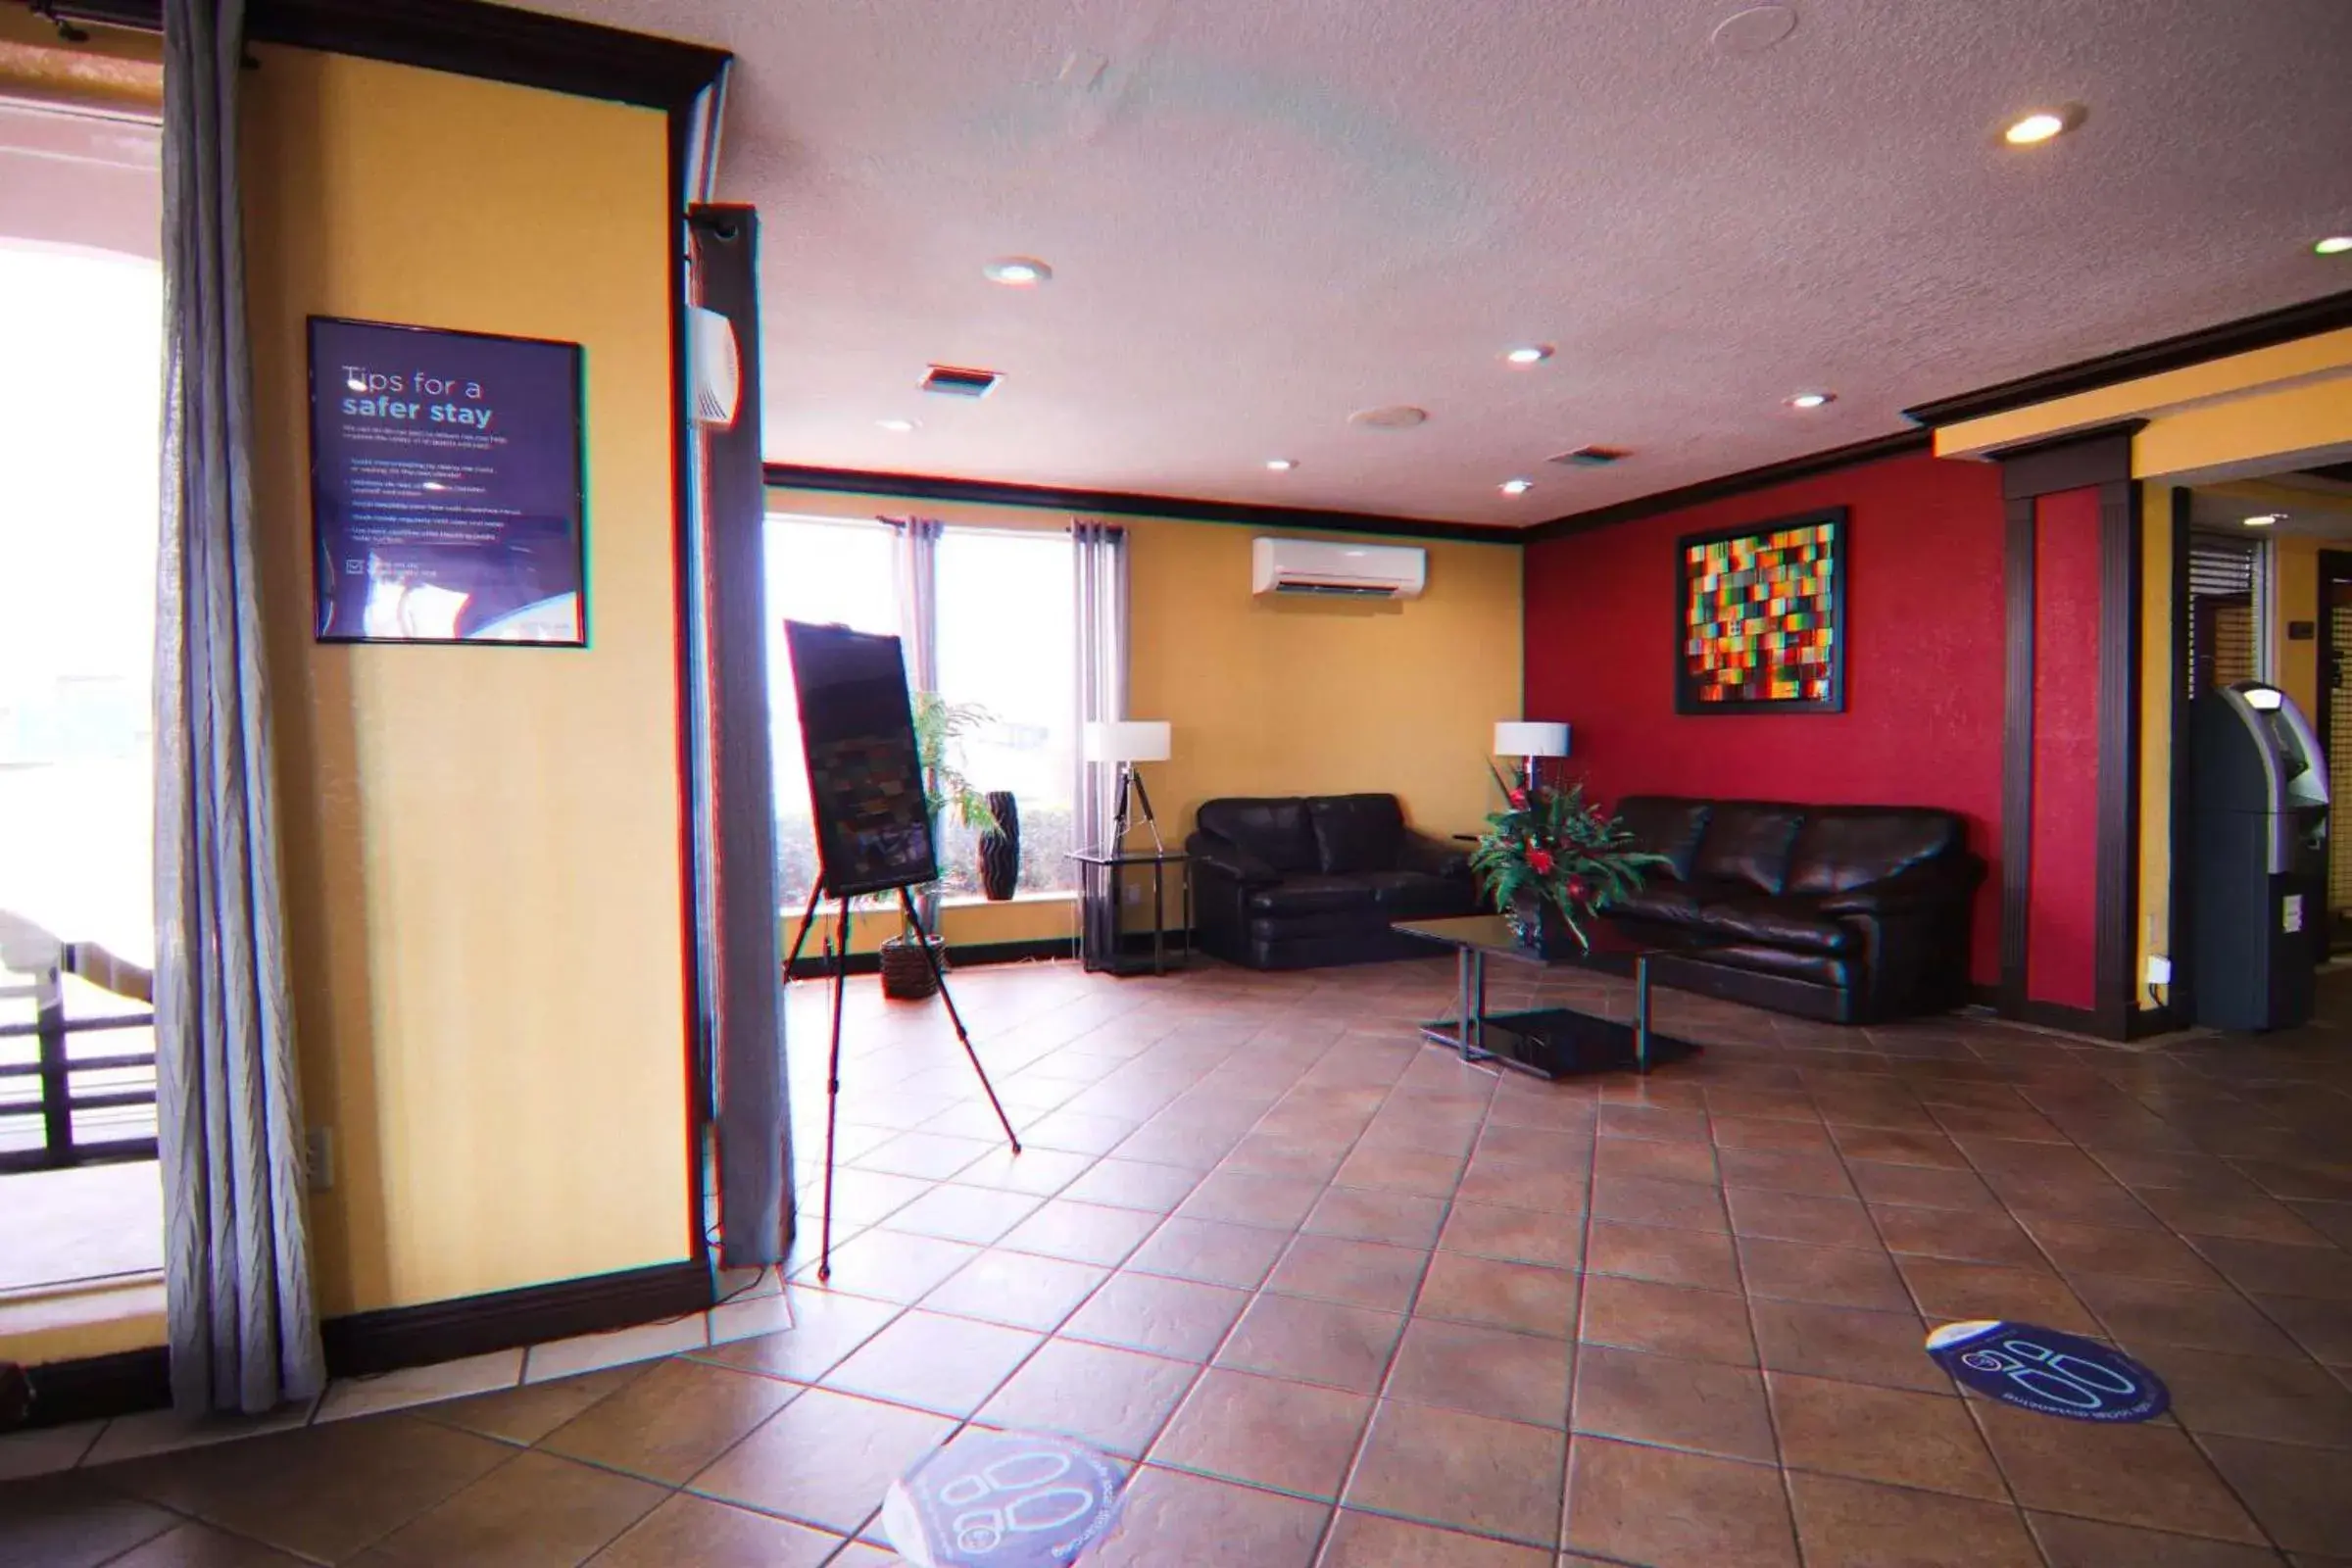 Lobby or reception, Lobby/Reception in Ramada by Wyndham Davenport Orlando South